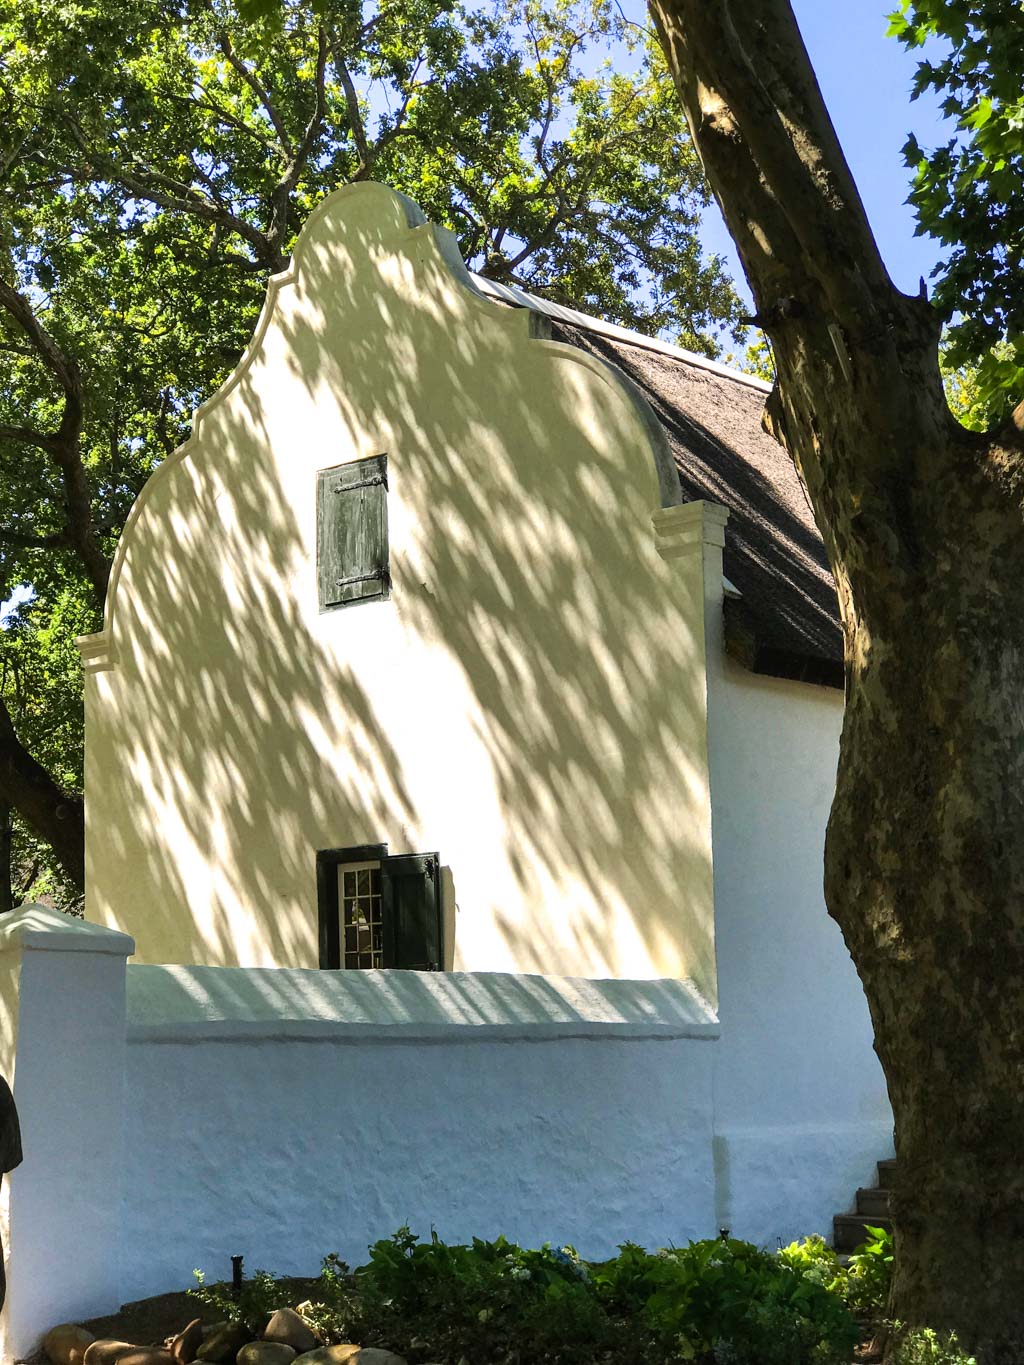 Restored Cape Dutch buildings